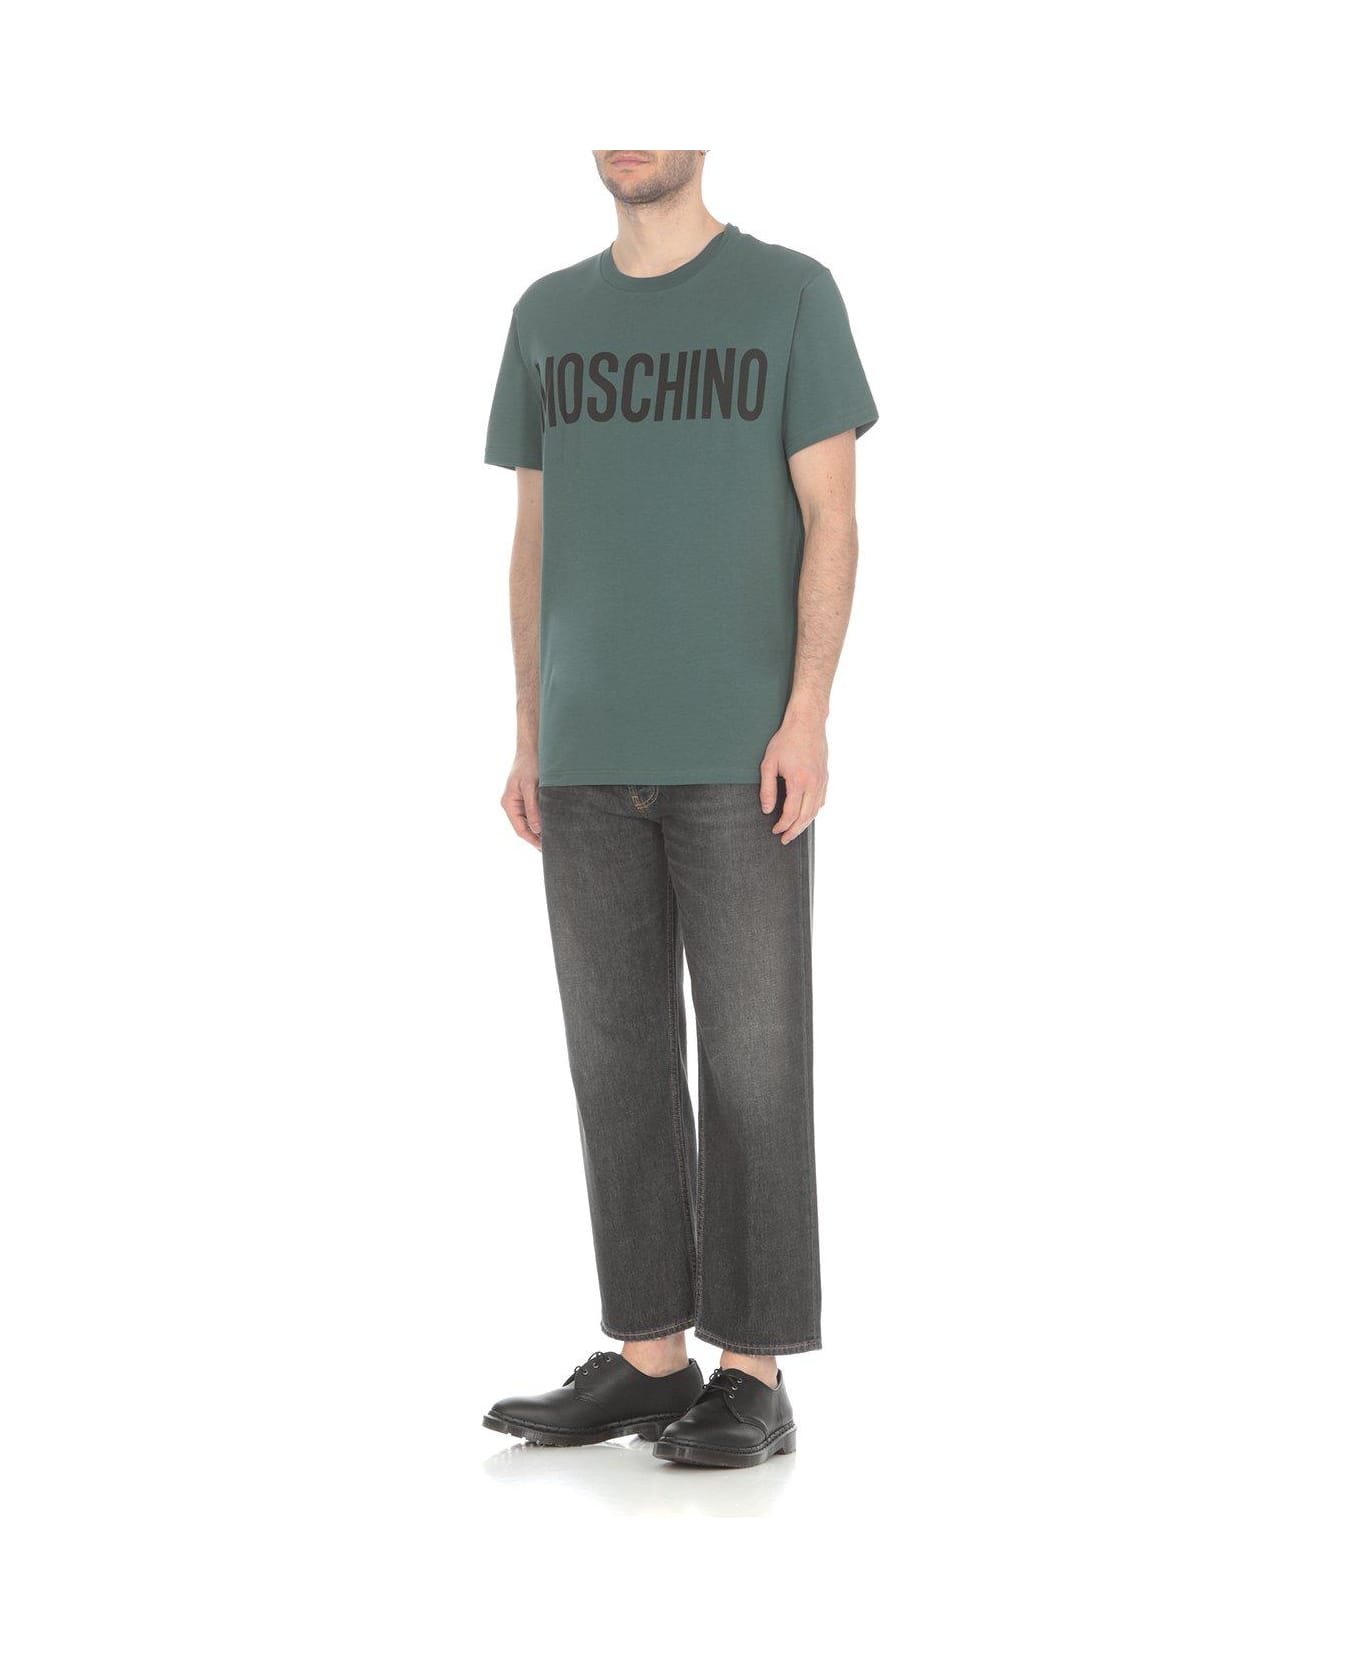 Moschino Logo Printed Crewneck T-shirt - Verde